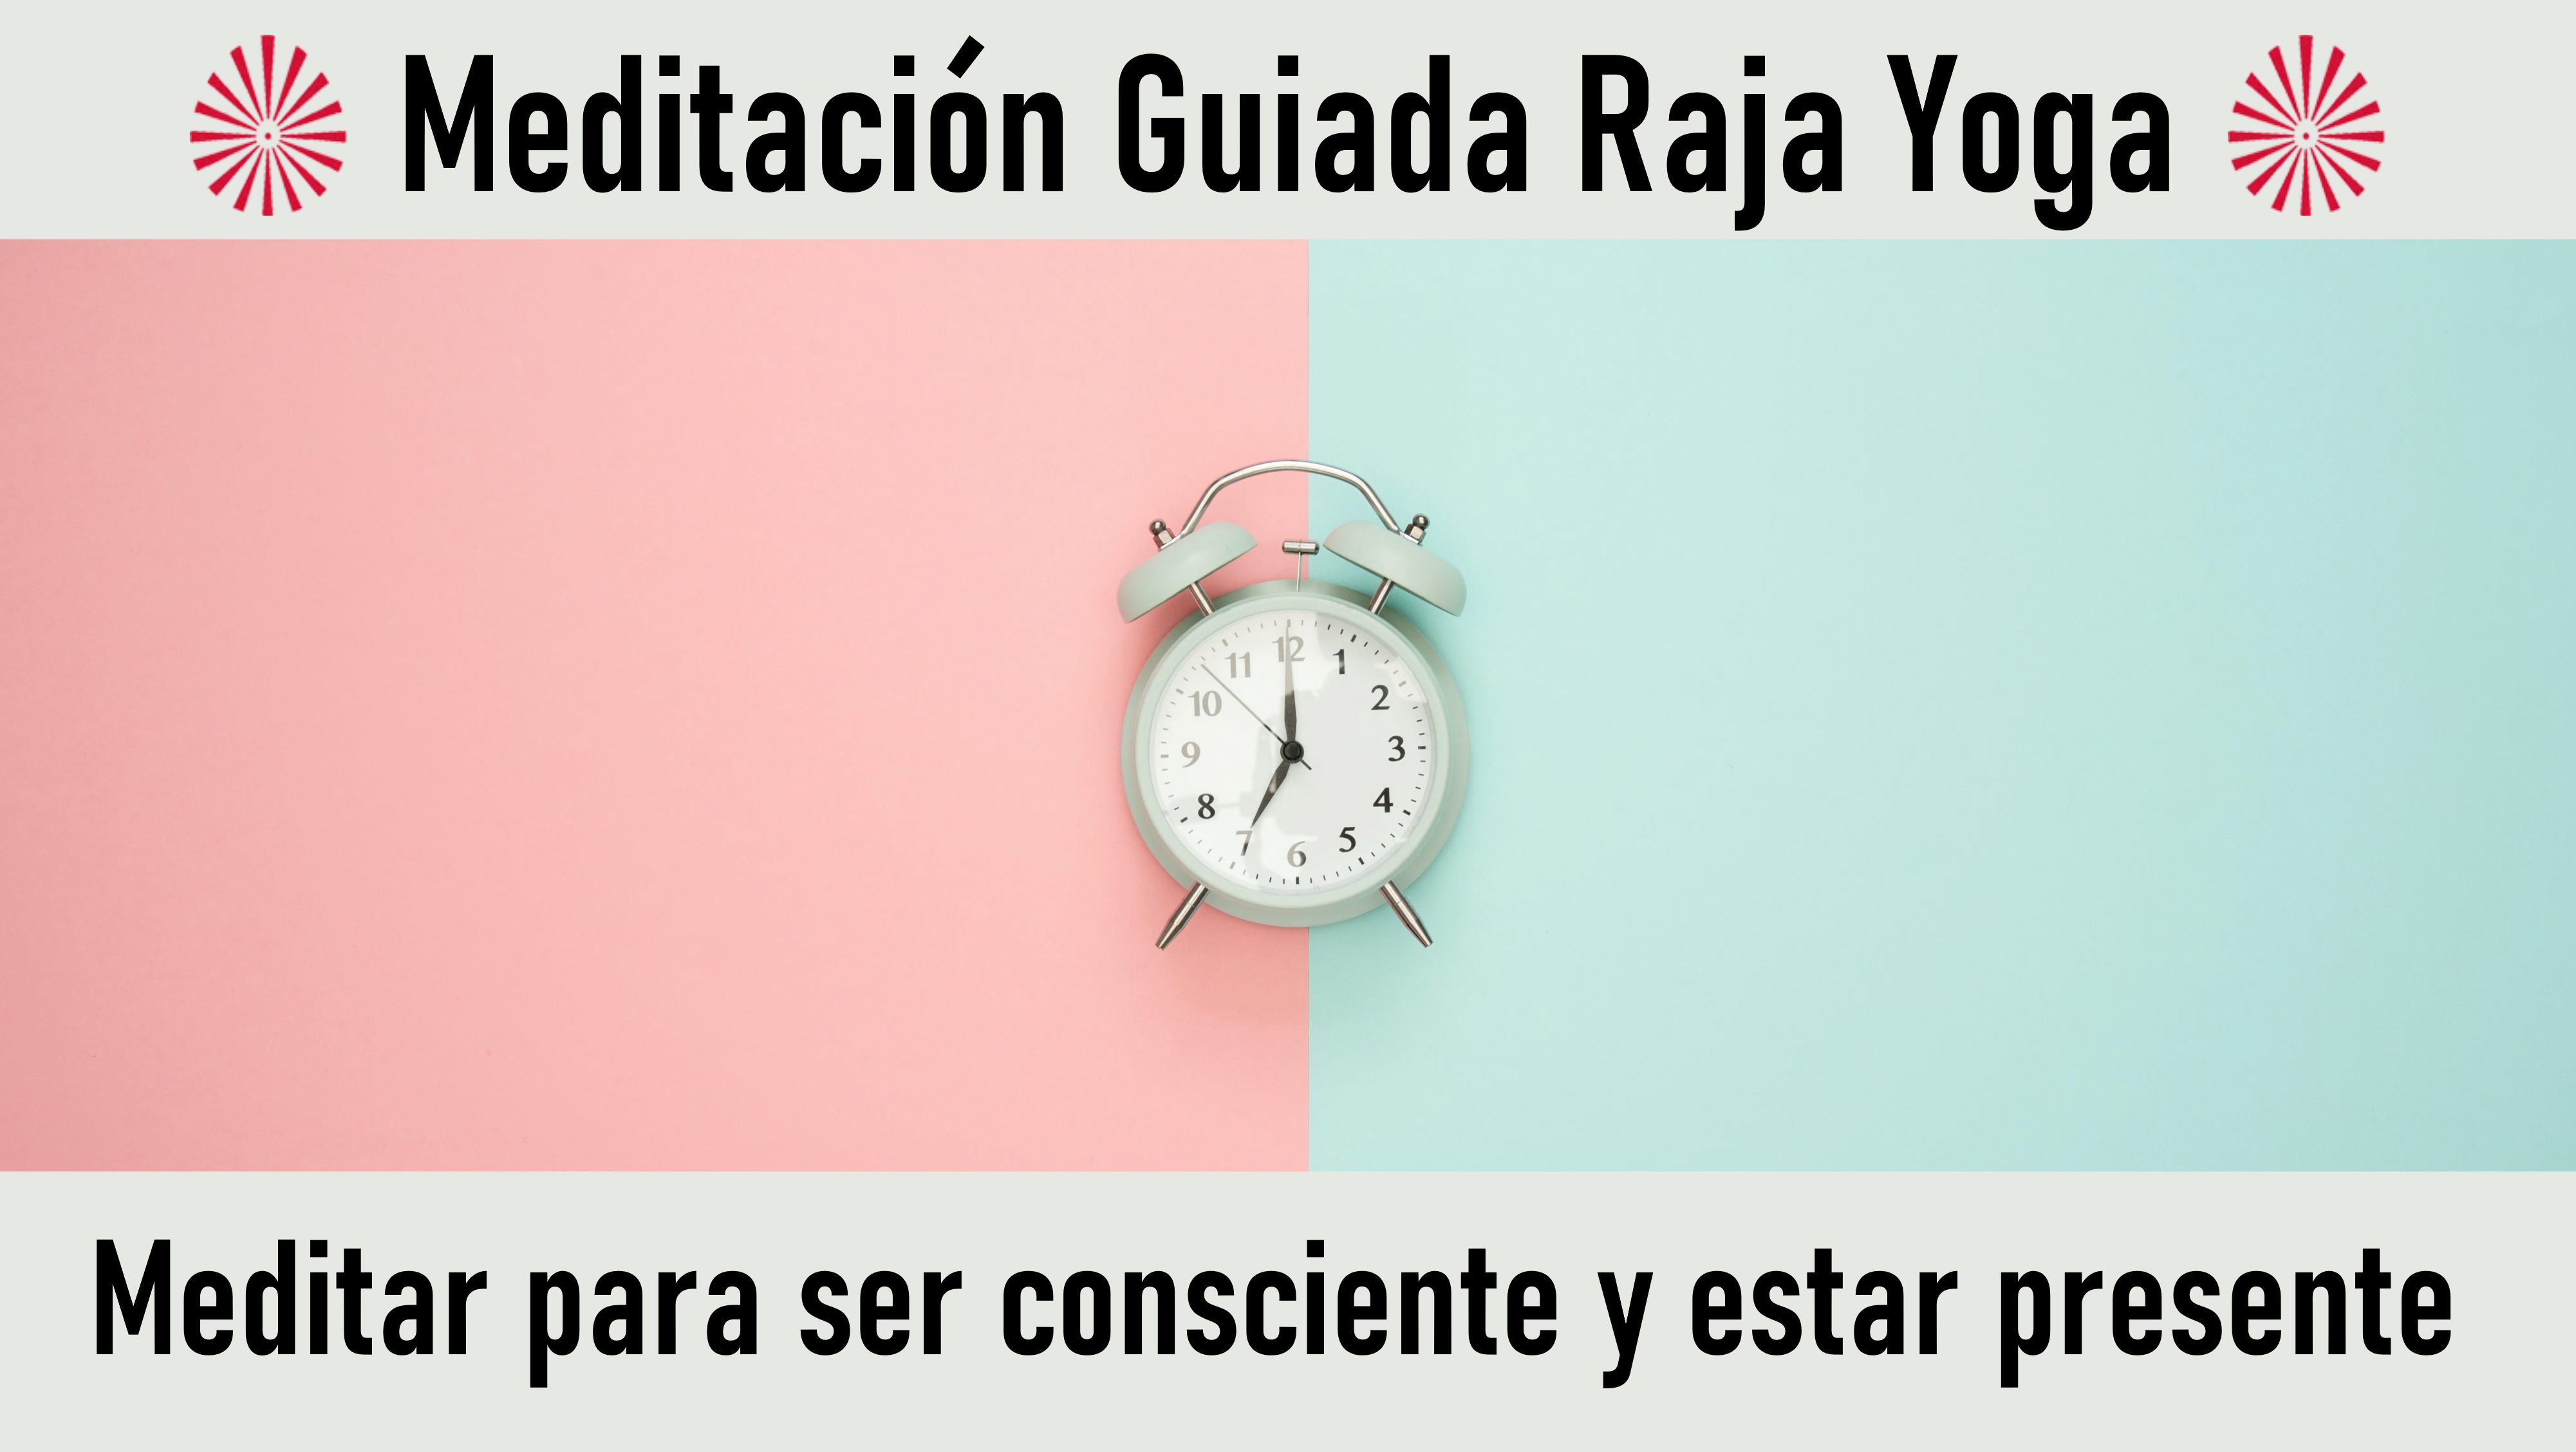 Meditación Raja Yoga: Meditar para ser consciente y estar presente (23 Septiembre 2020) On-line desde Sevilla